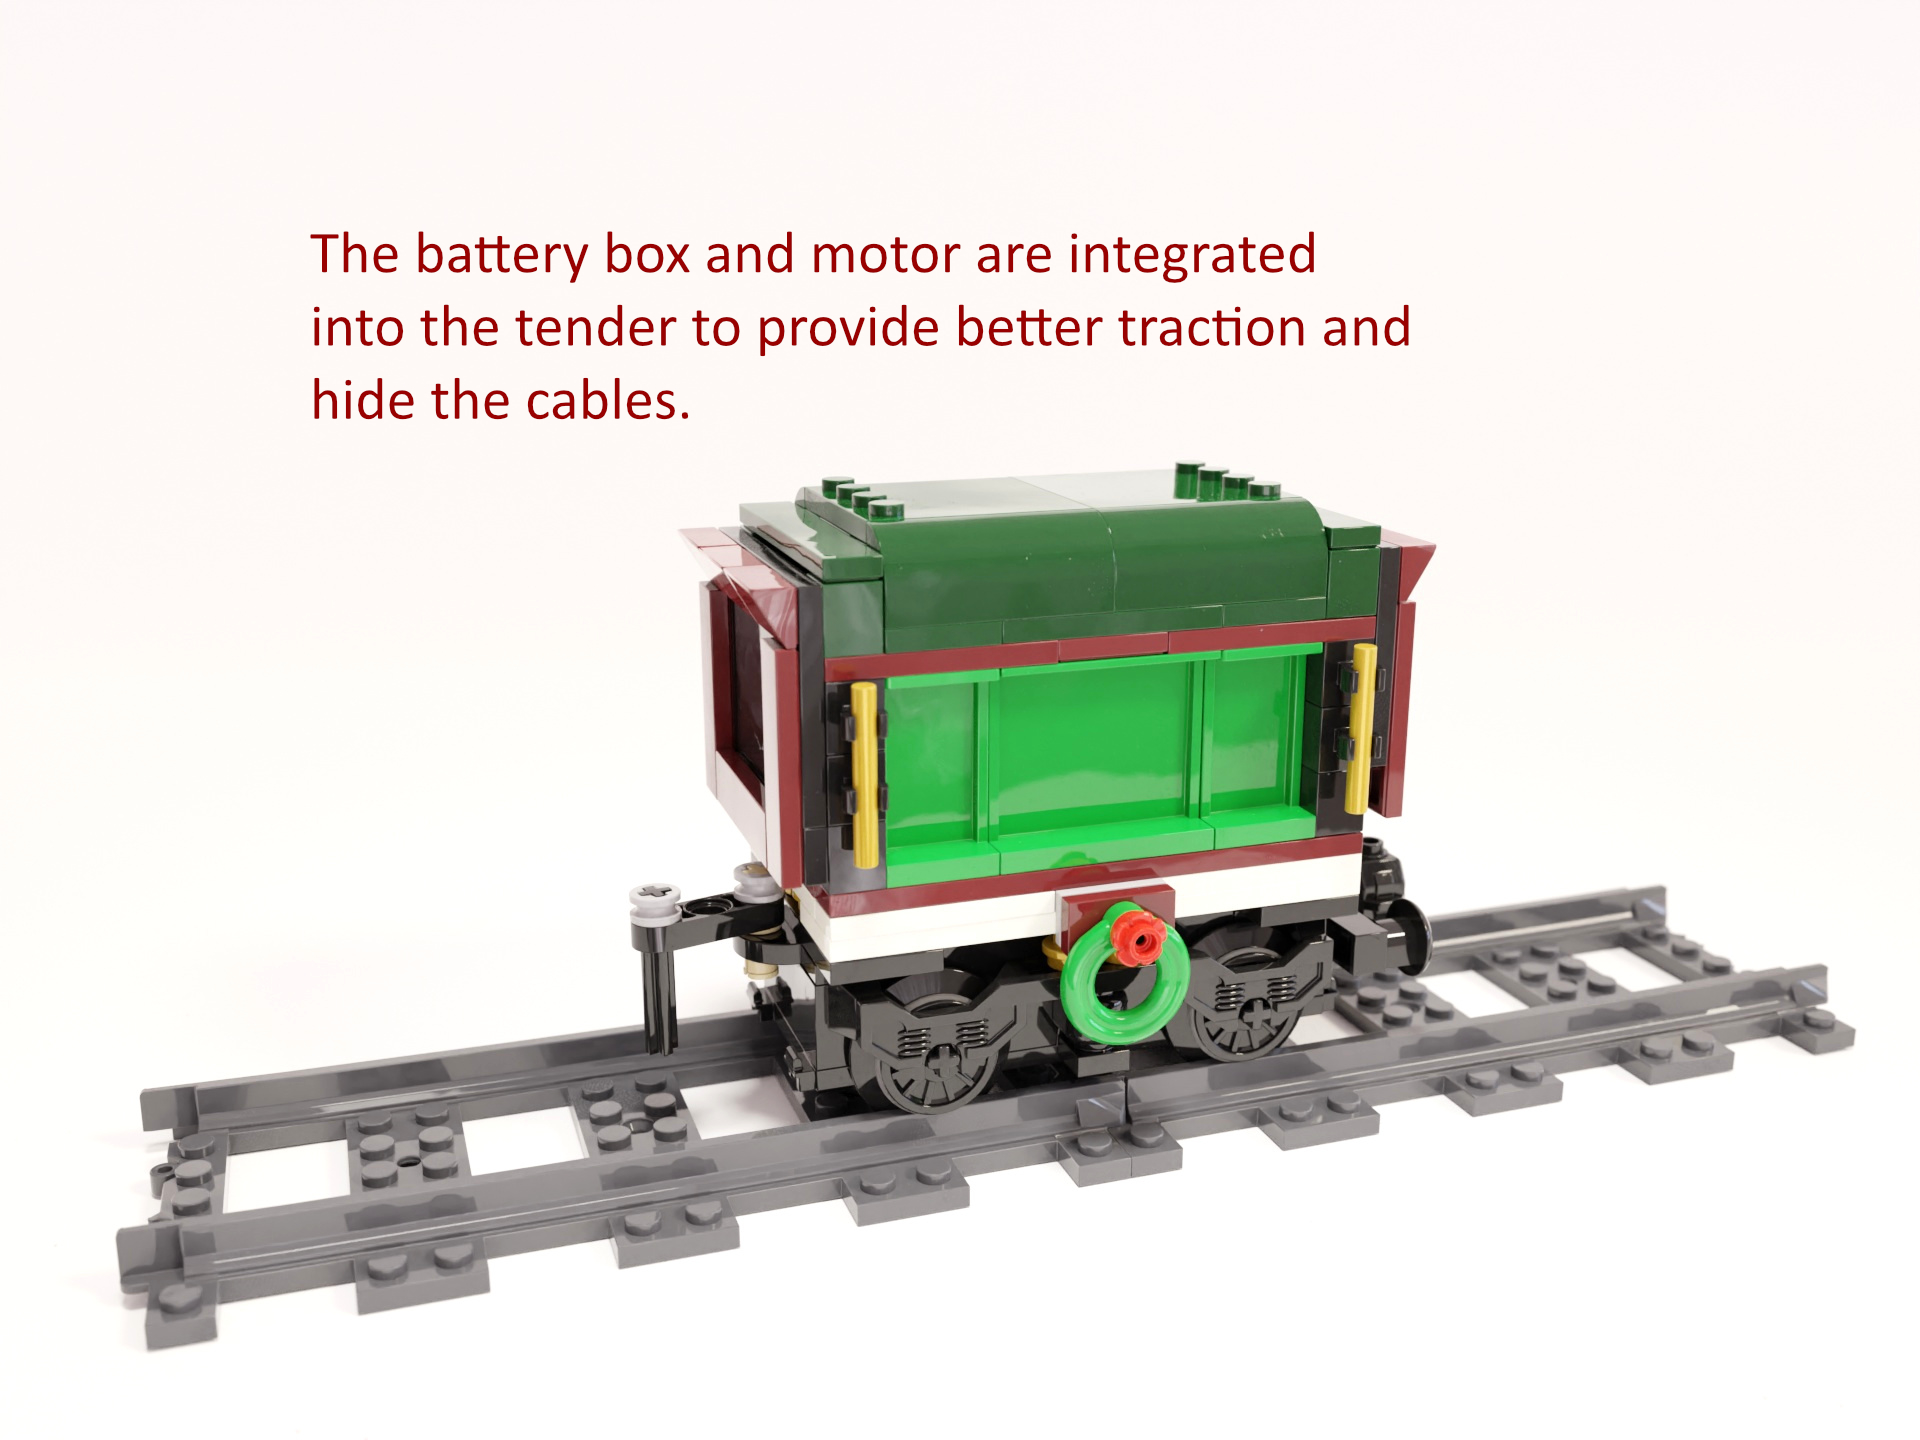 Bild 2: Der Batteriekasten und Motor sind in den Tender integriert, um eine bessere Traktion zu gewährleisten und die Kabel zu verstecken